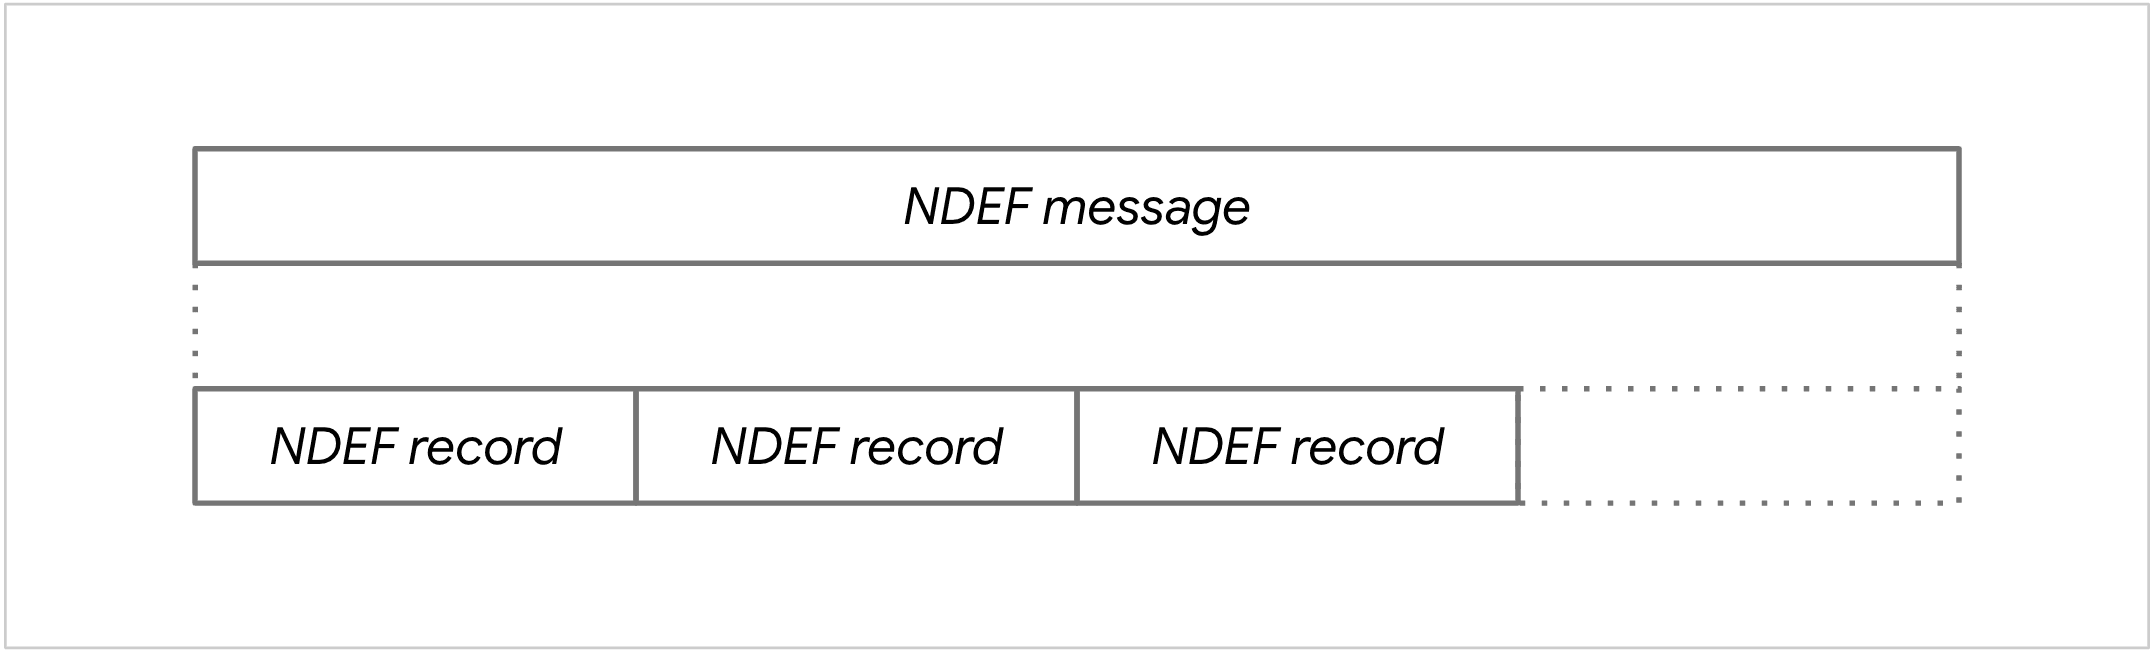 NDEF 消息示意图